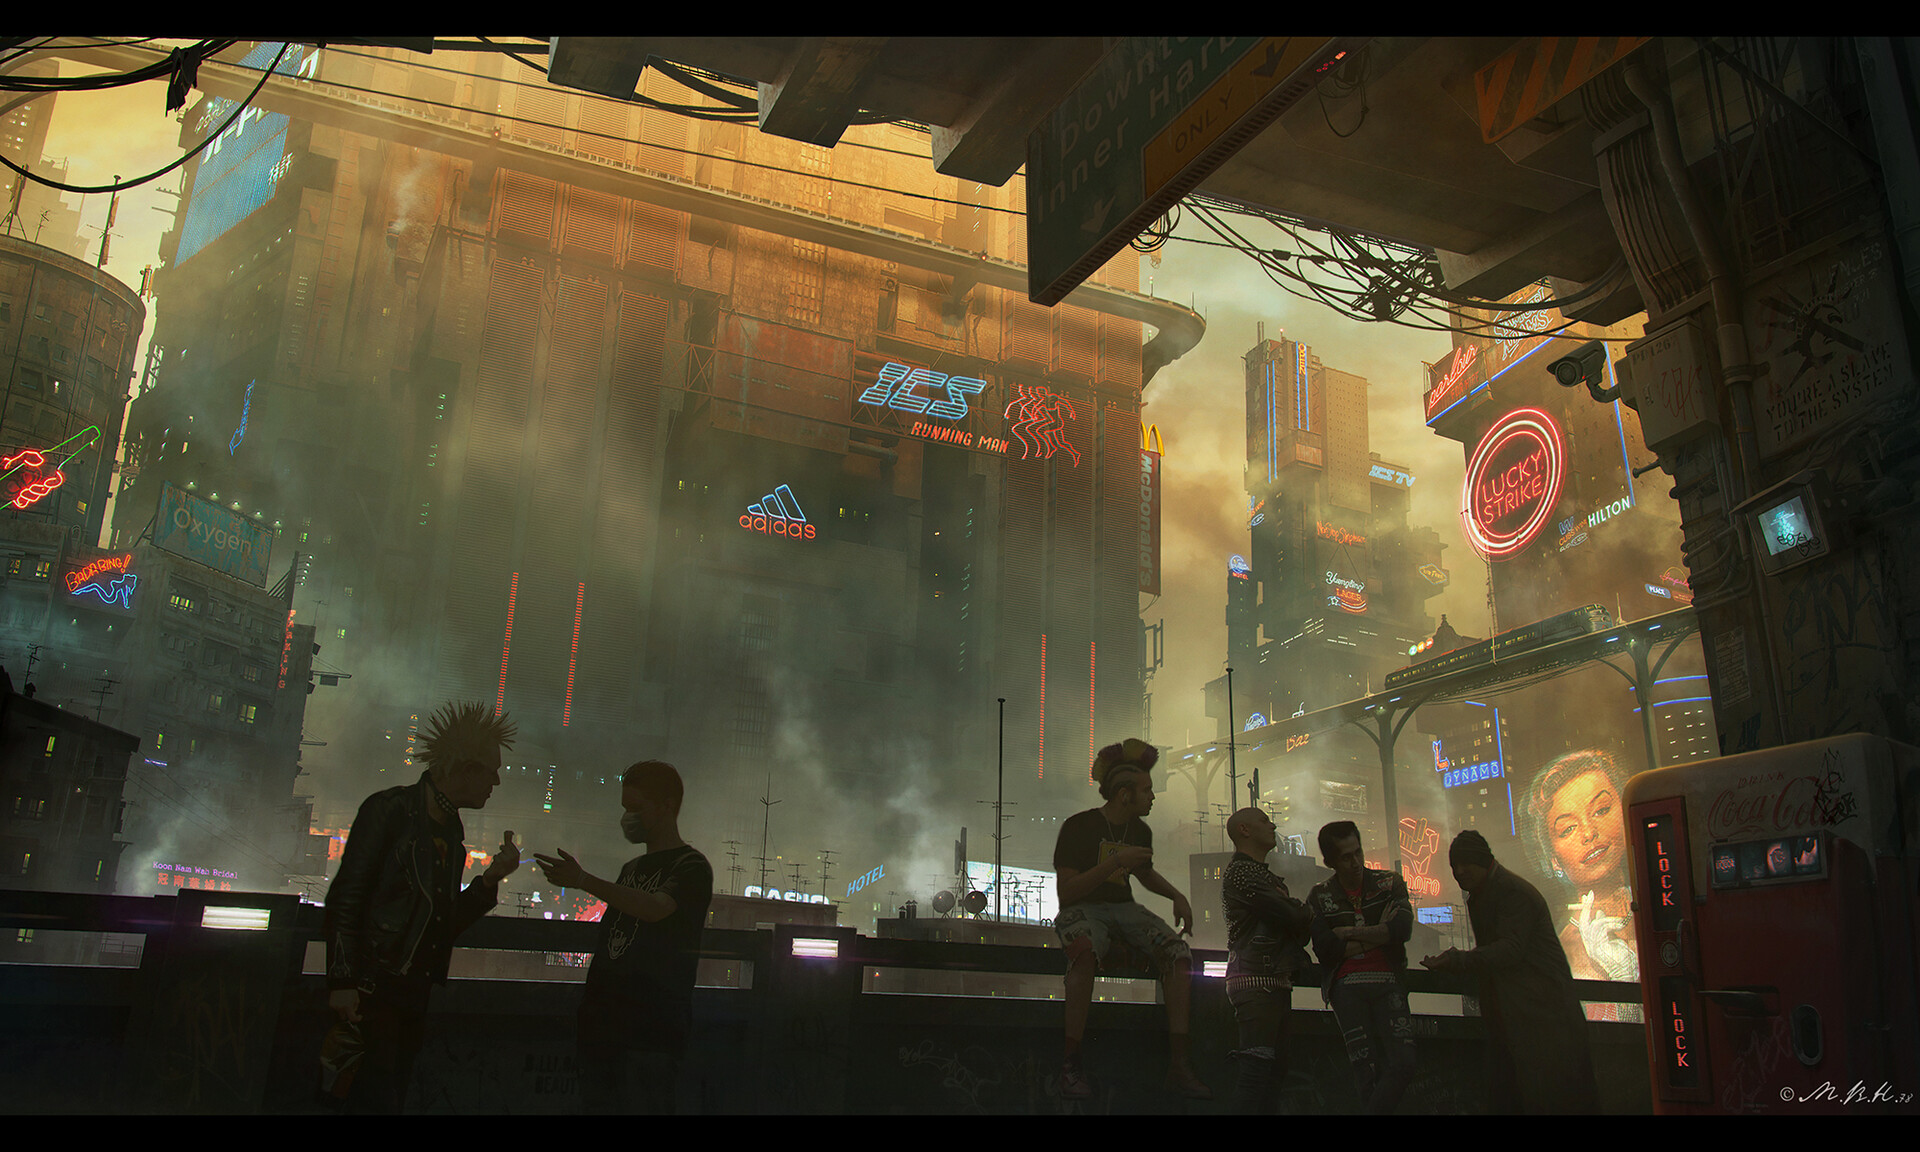 General 1920x1152 artwork futuristic city science fiction cityscape futuristic low-angle cyberpunk